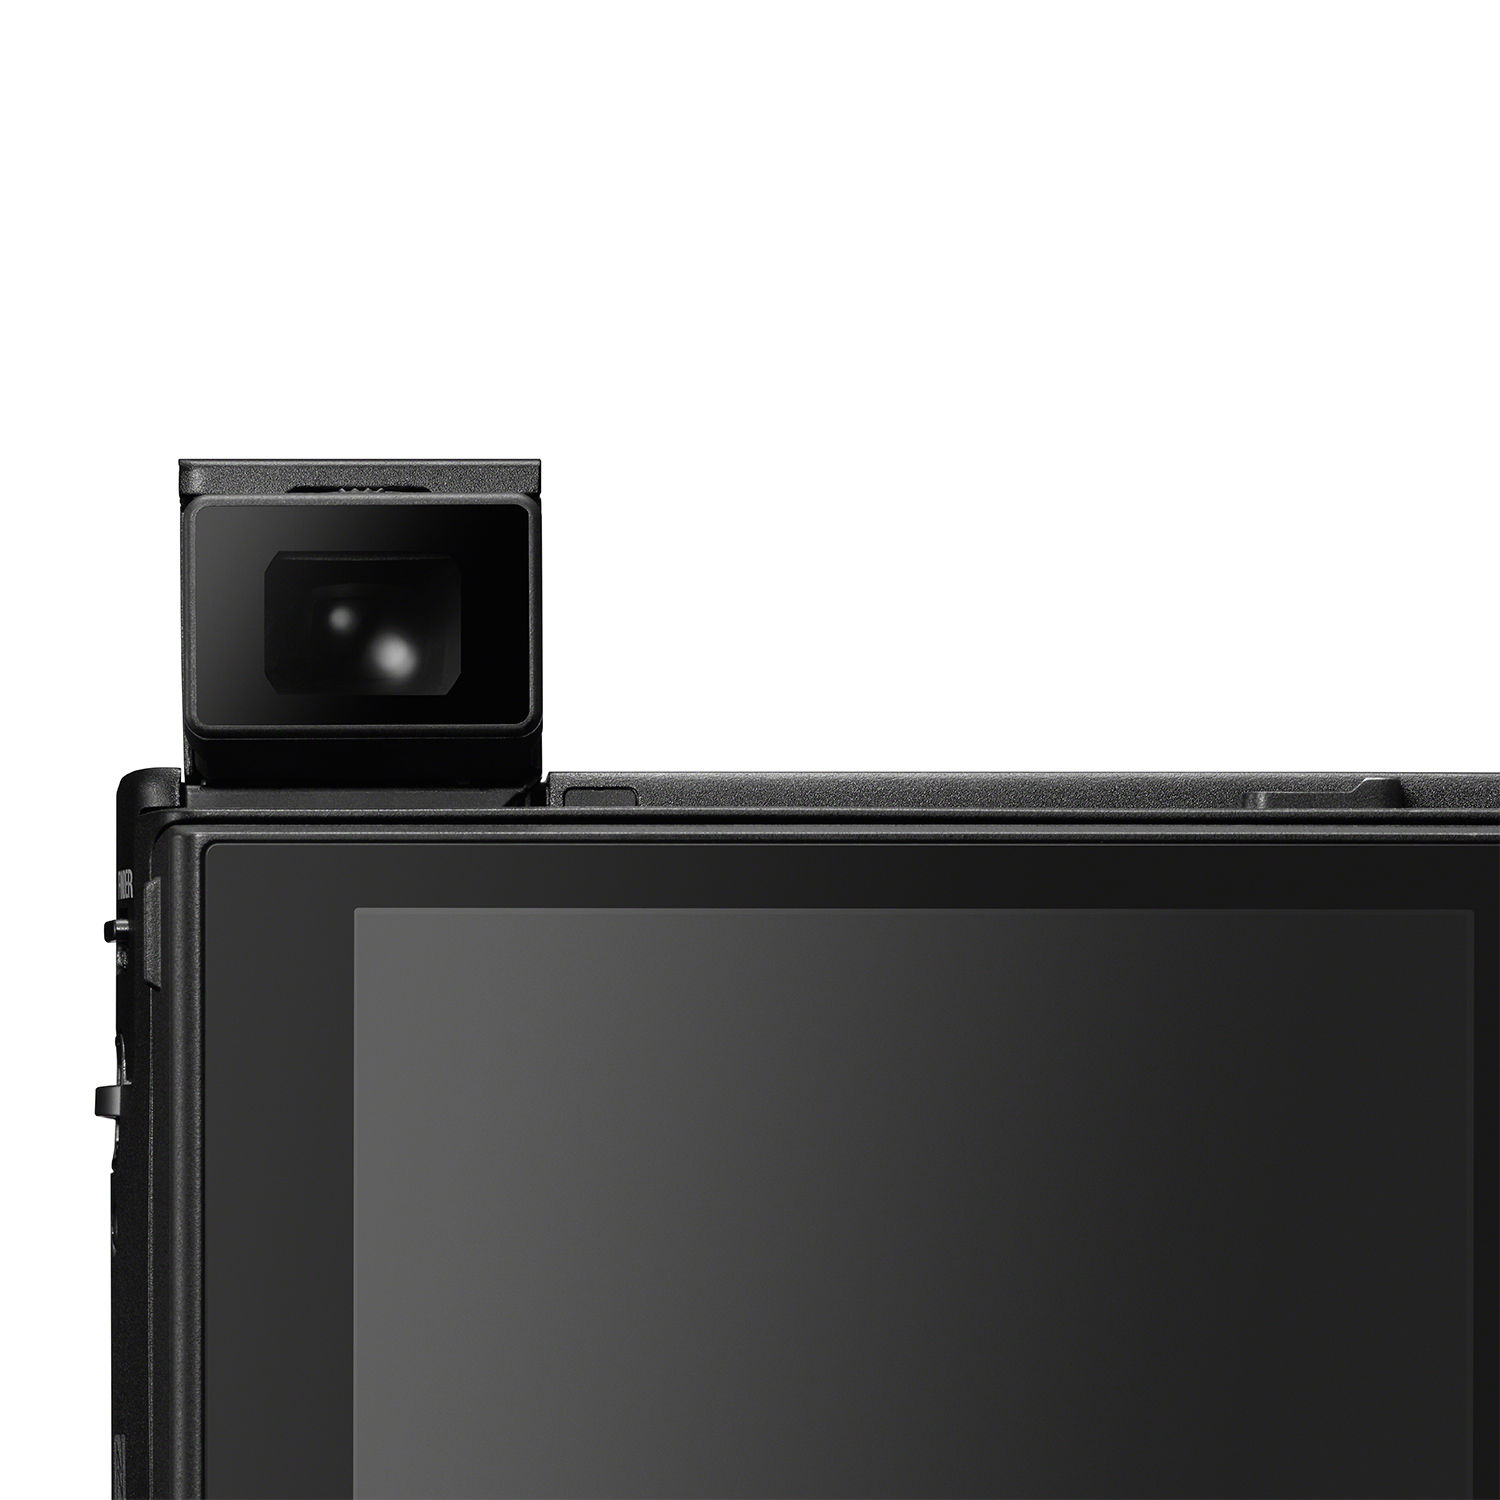 Sony DSC-RX100VI 24-200mm 1" CMOS